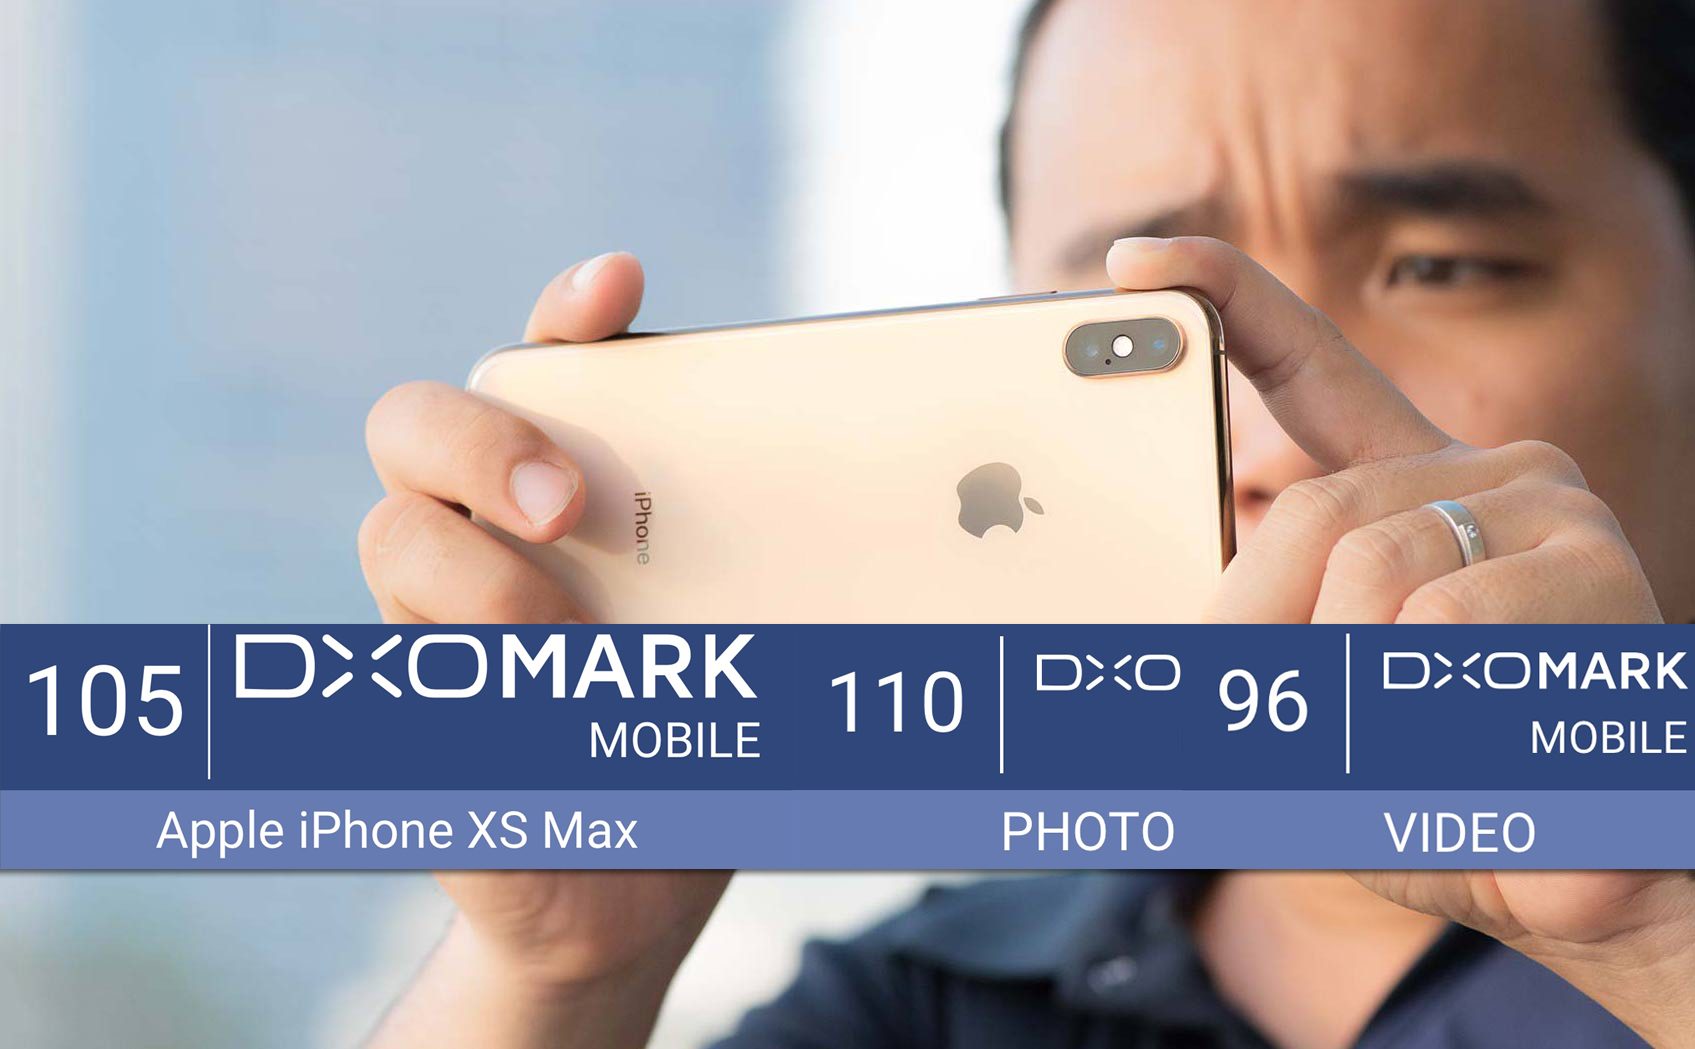 iPhone Xs/Xs Max đạt 105 điểm DxOMark chỉ thua P20 Pro